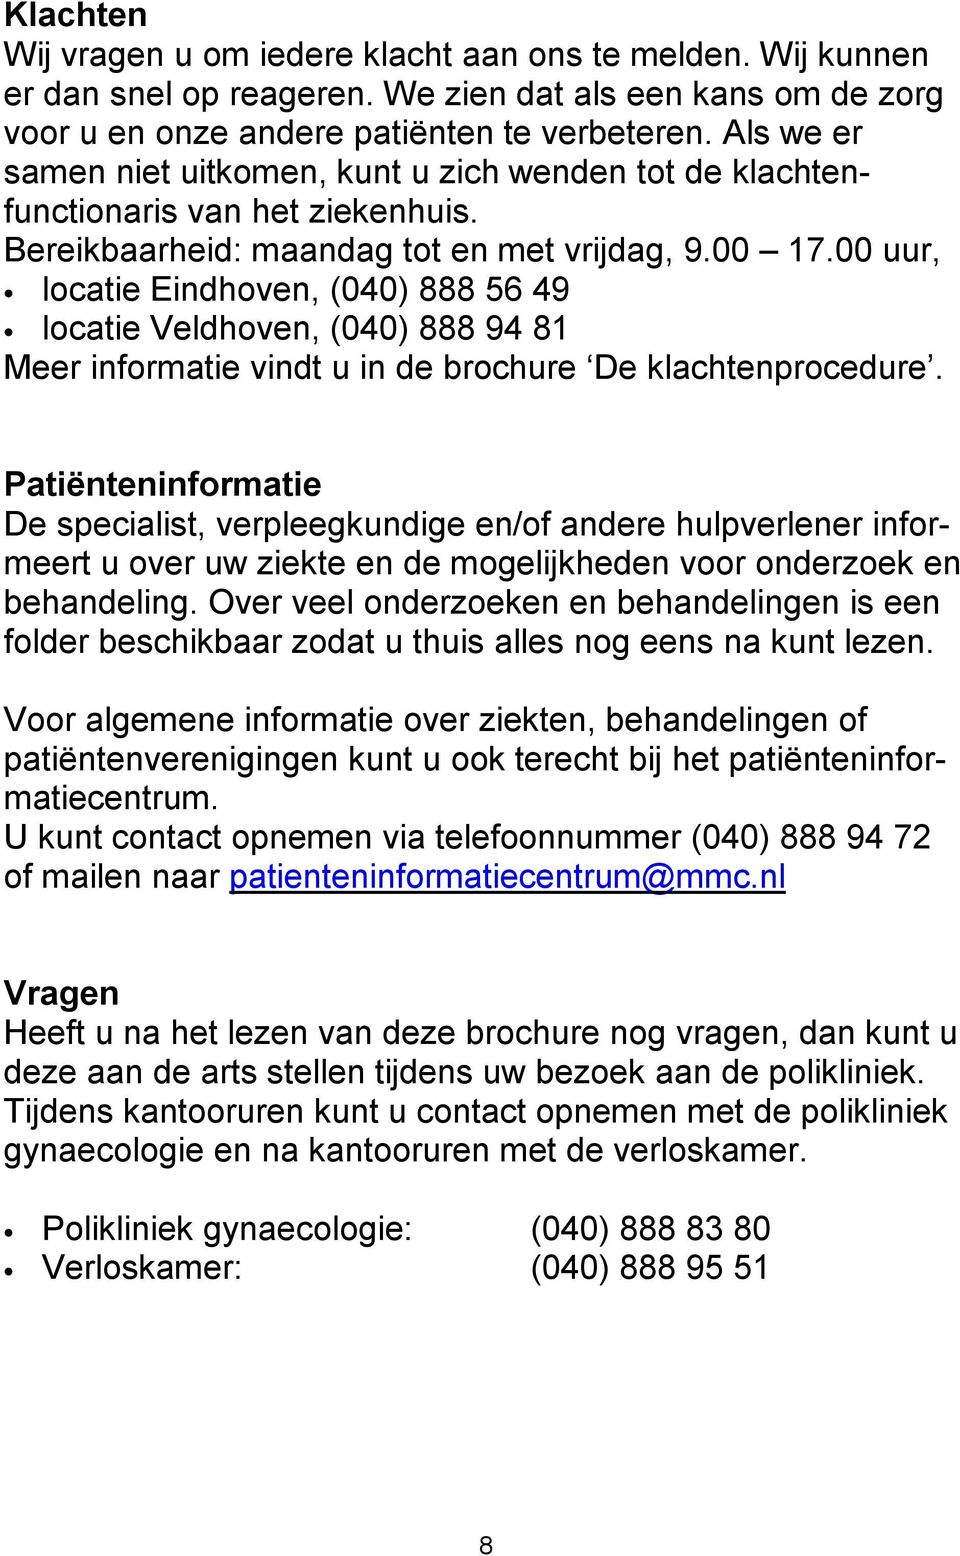 00 uur, locatie Eindhoven, (040) 888 56 49 locatie Veldhoven, (040) 888 94 81 Meer informatie vindt u in de brochure De klachtenprocedure.